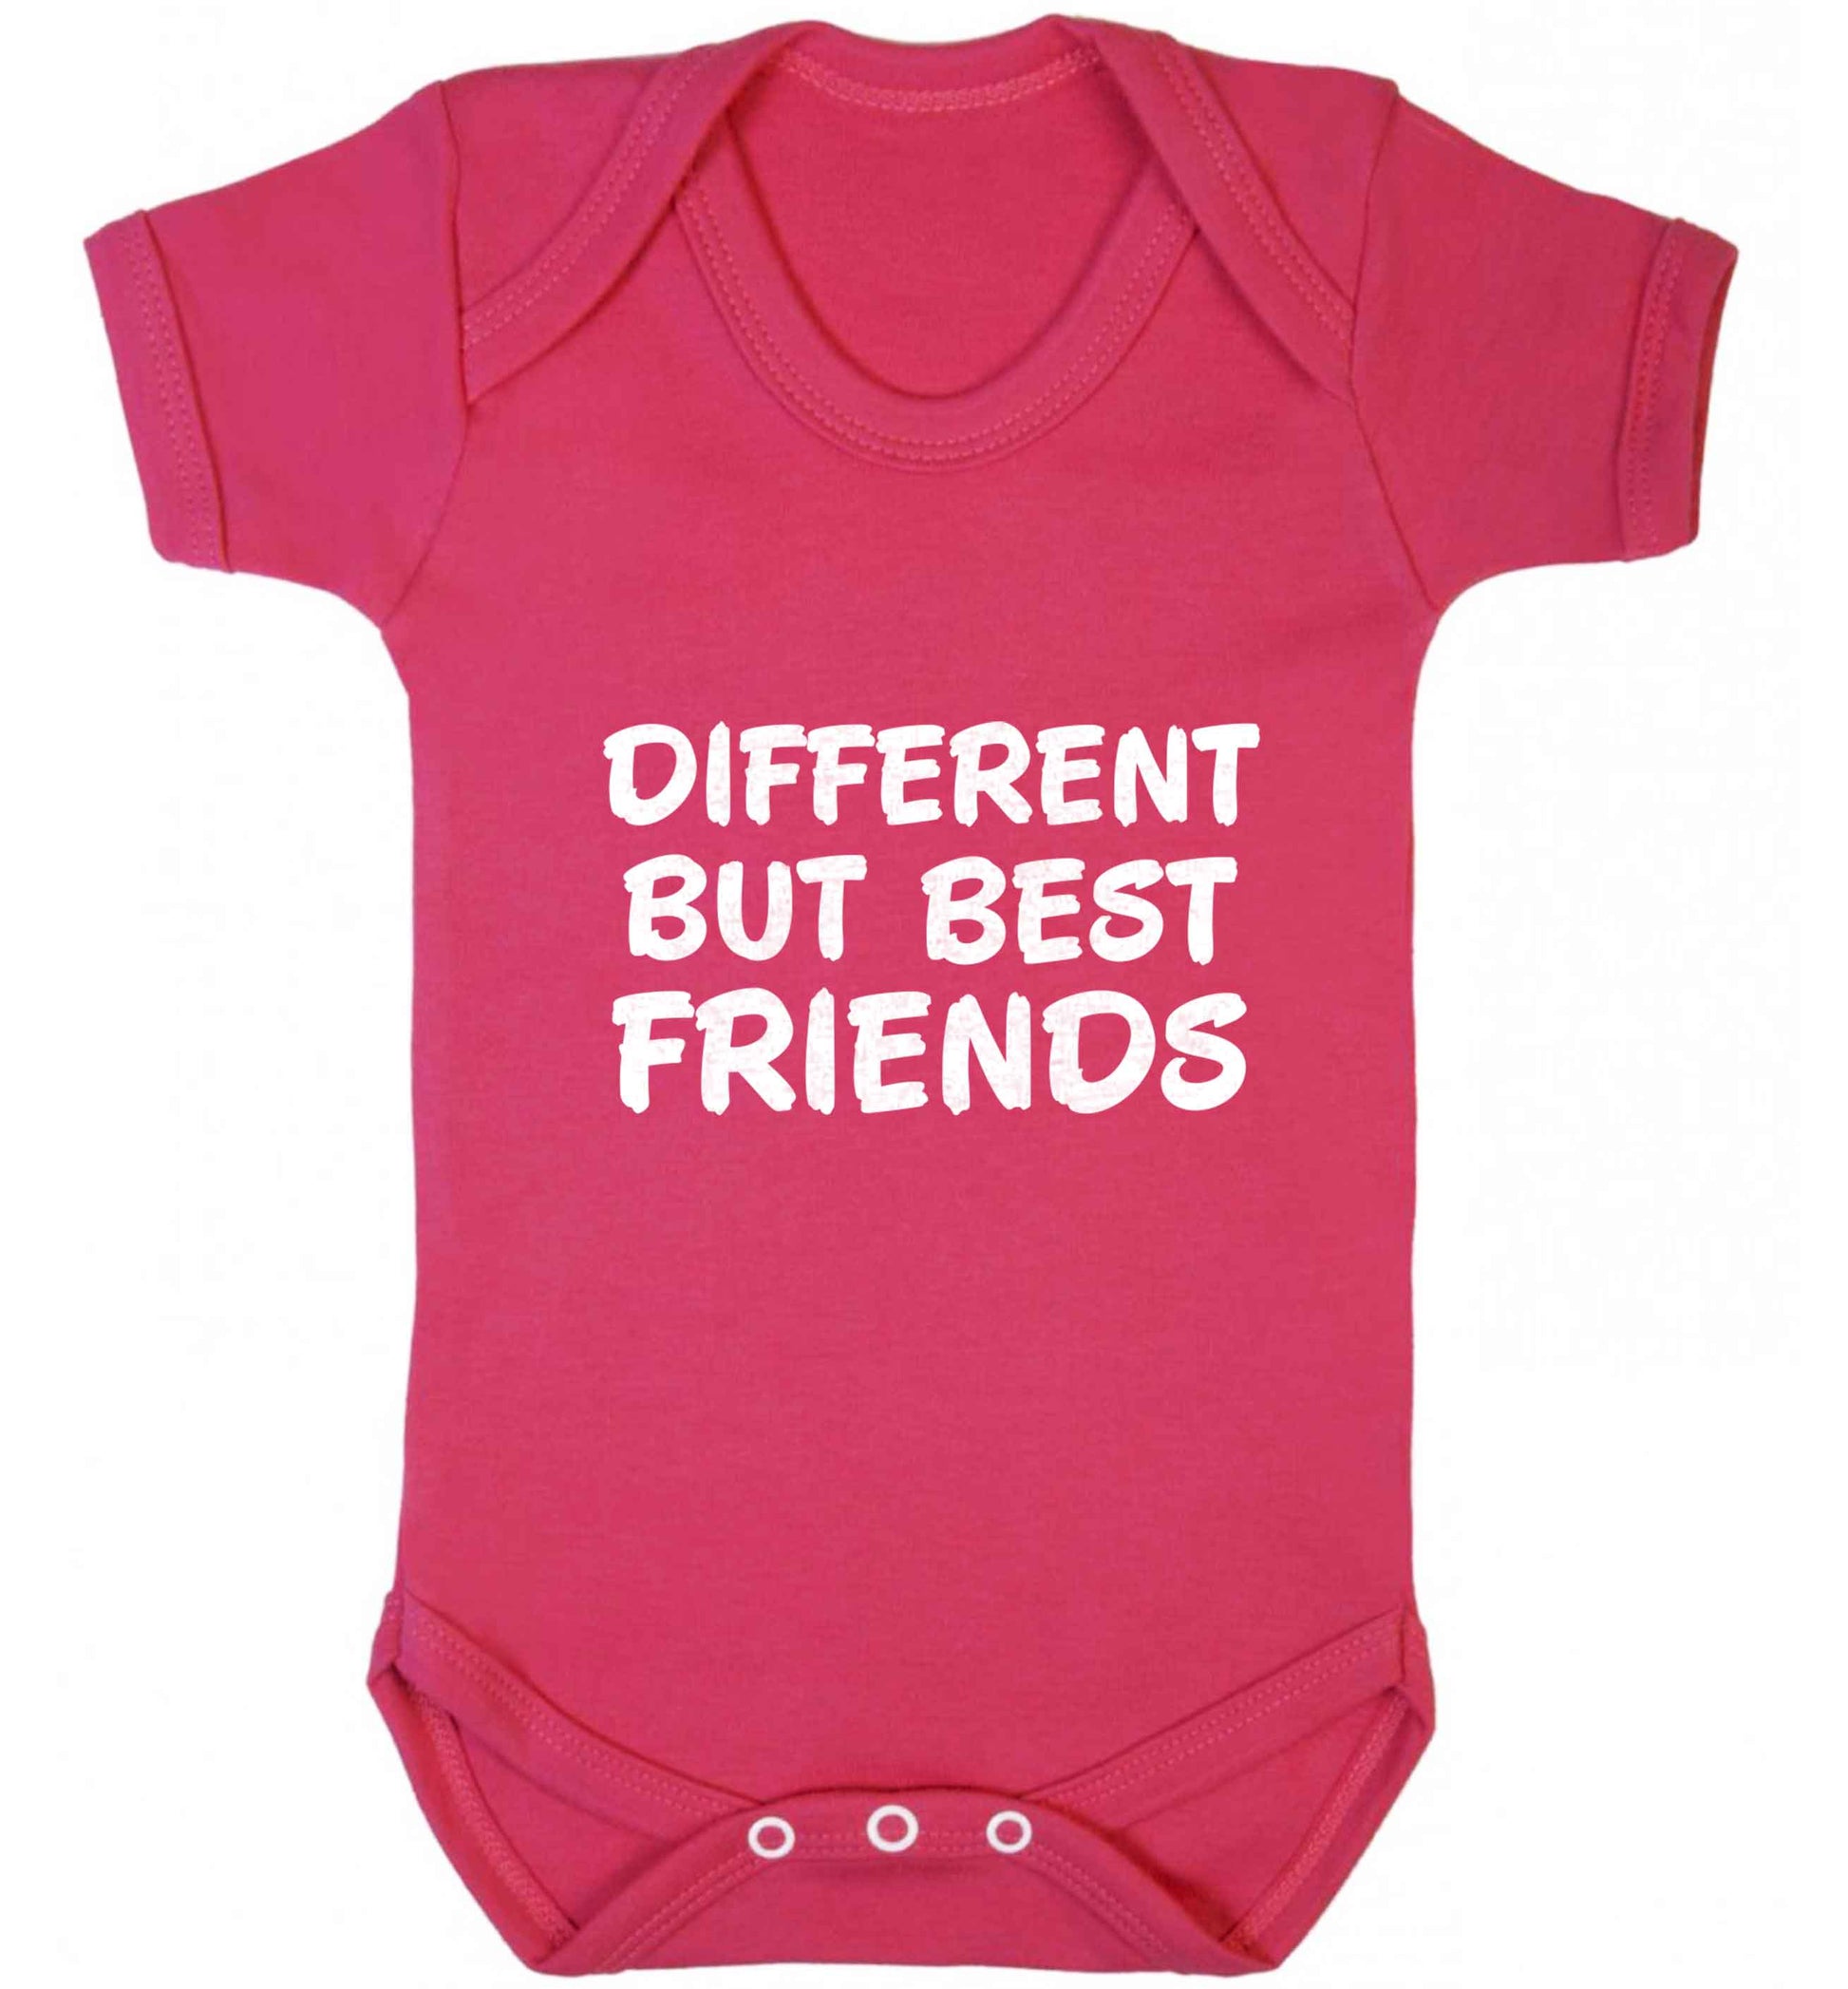 Different but best friends baby vest dark pink 18-24 months